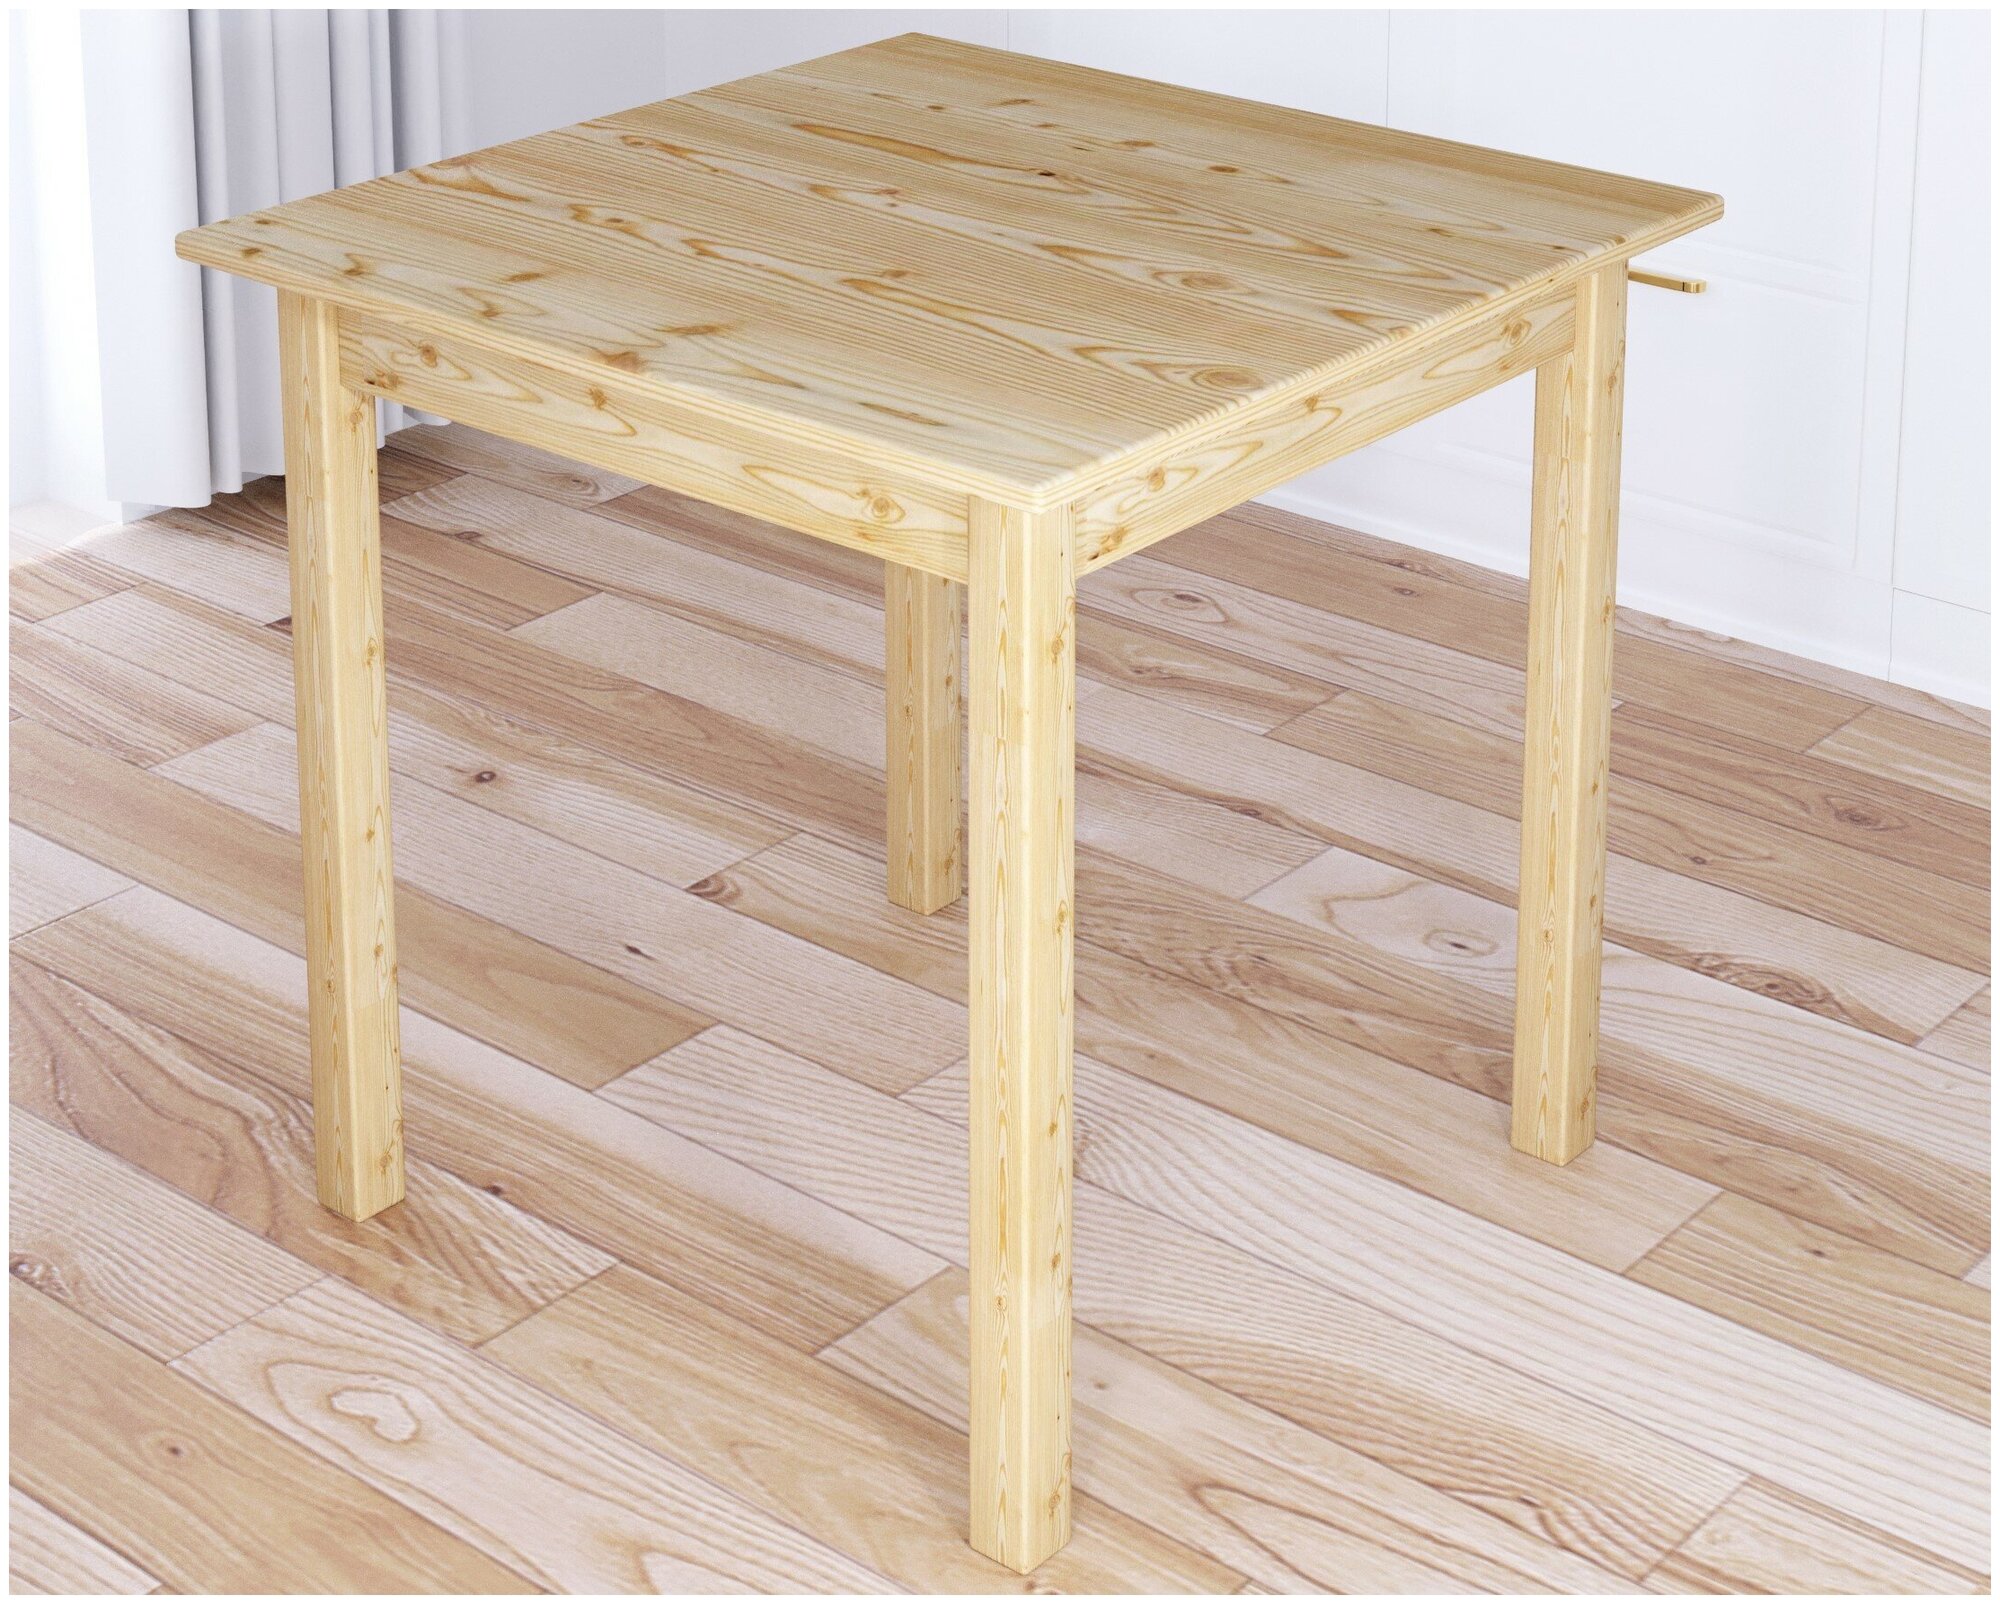 Стол кухонный Классика квадратный с сосновыми столешницей и ножками без покрытия, 20 мм, 60х60х75 см